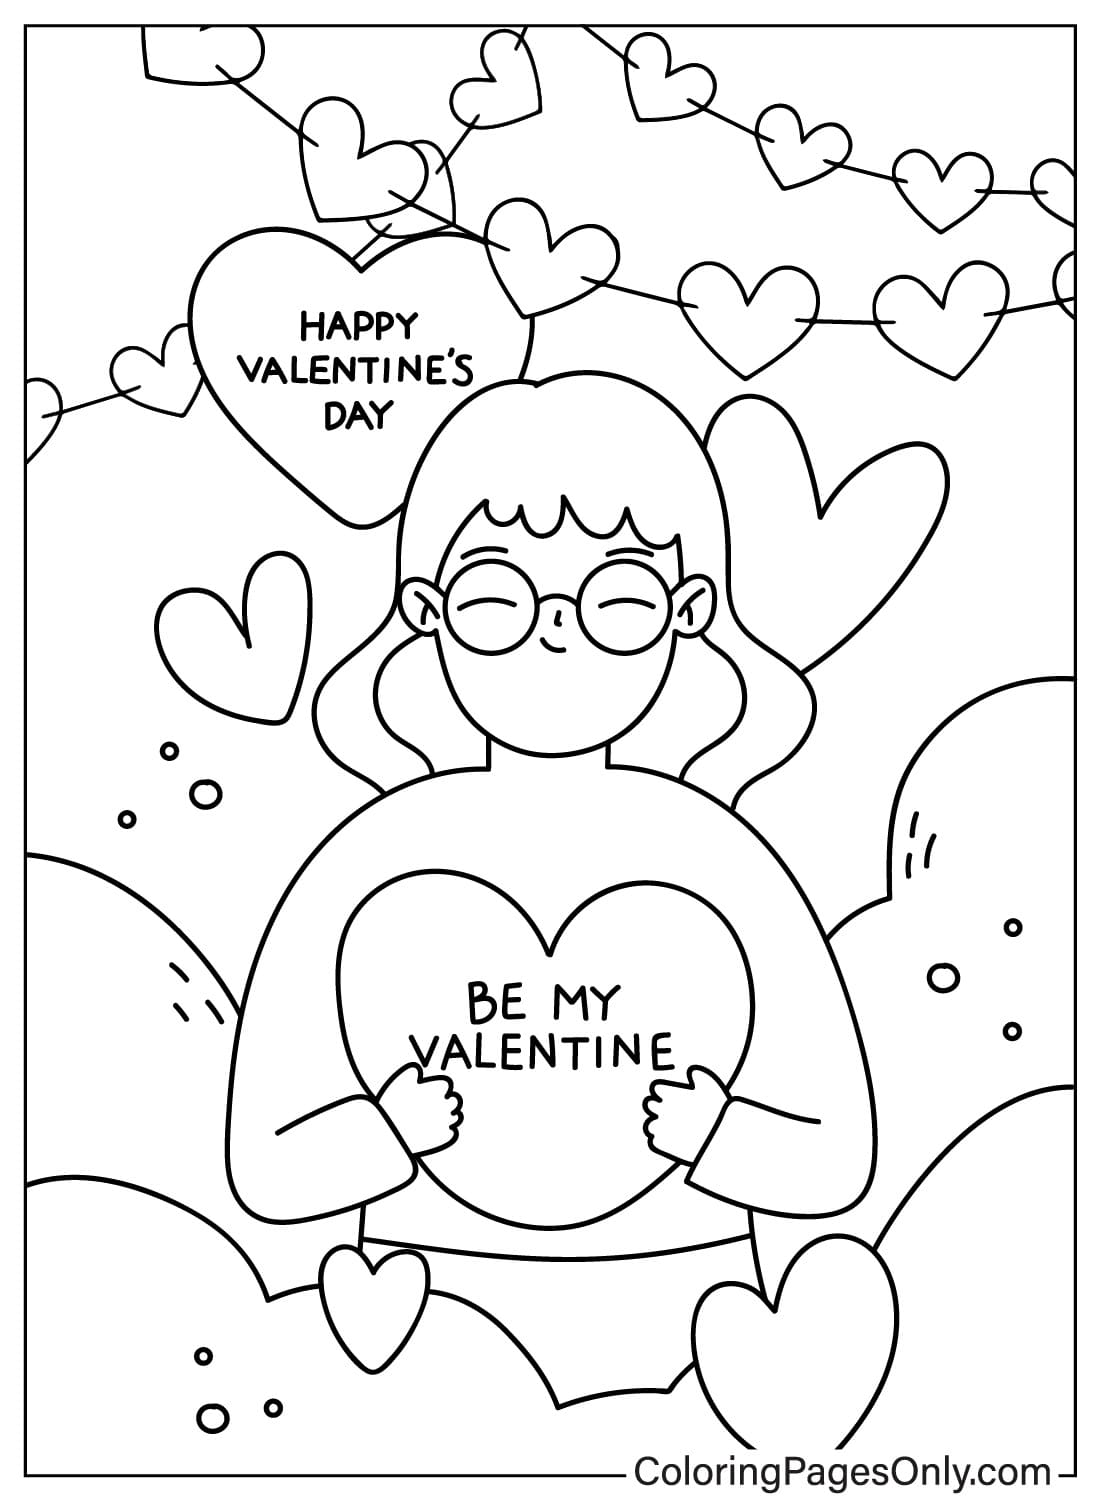 Página para colorear de tarjetas del día de San Valentín de Tarjetas del día de San Valentín